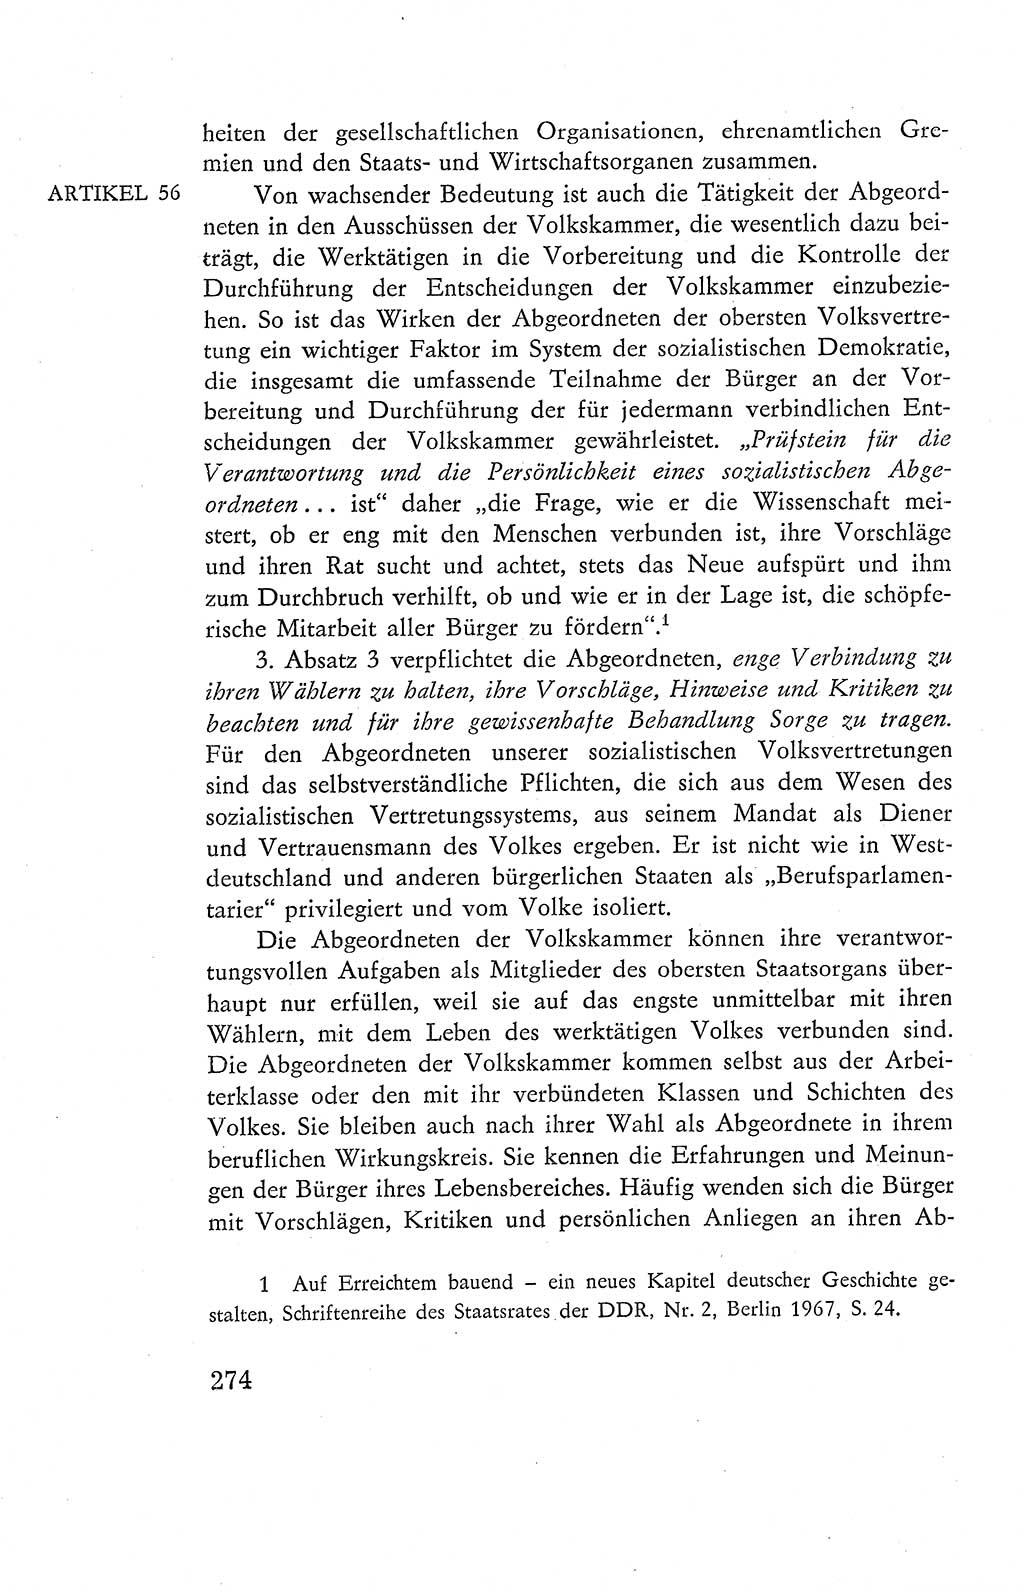 Verfassung der Deutschen Demokratischen Republik (DDR), Dokumente, Kommentar 1969, Band 2, Seite 274 (Verf. DDR Dok. Komm. 1969, Bd. 2, S. 274)